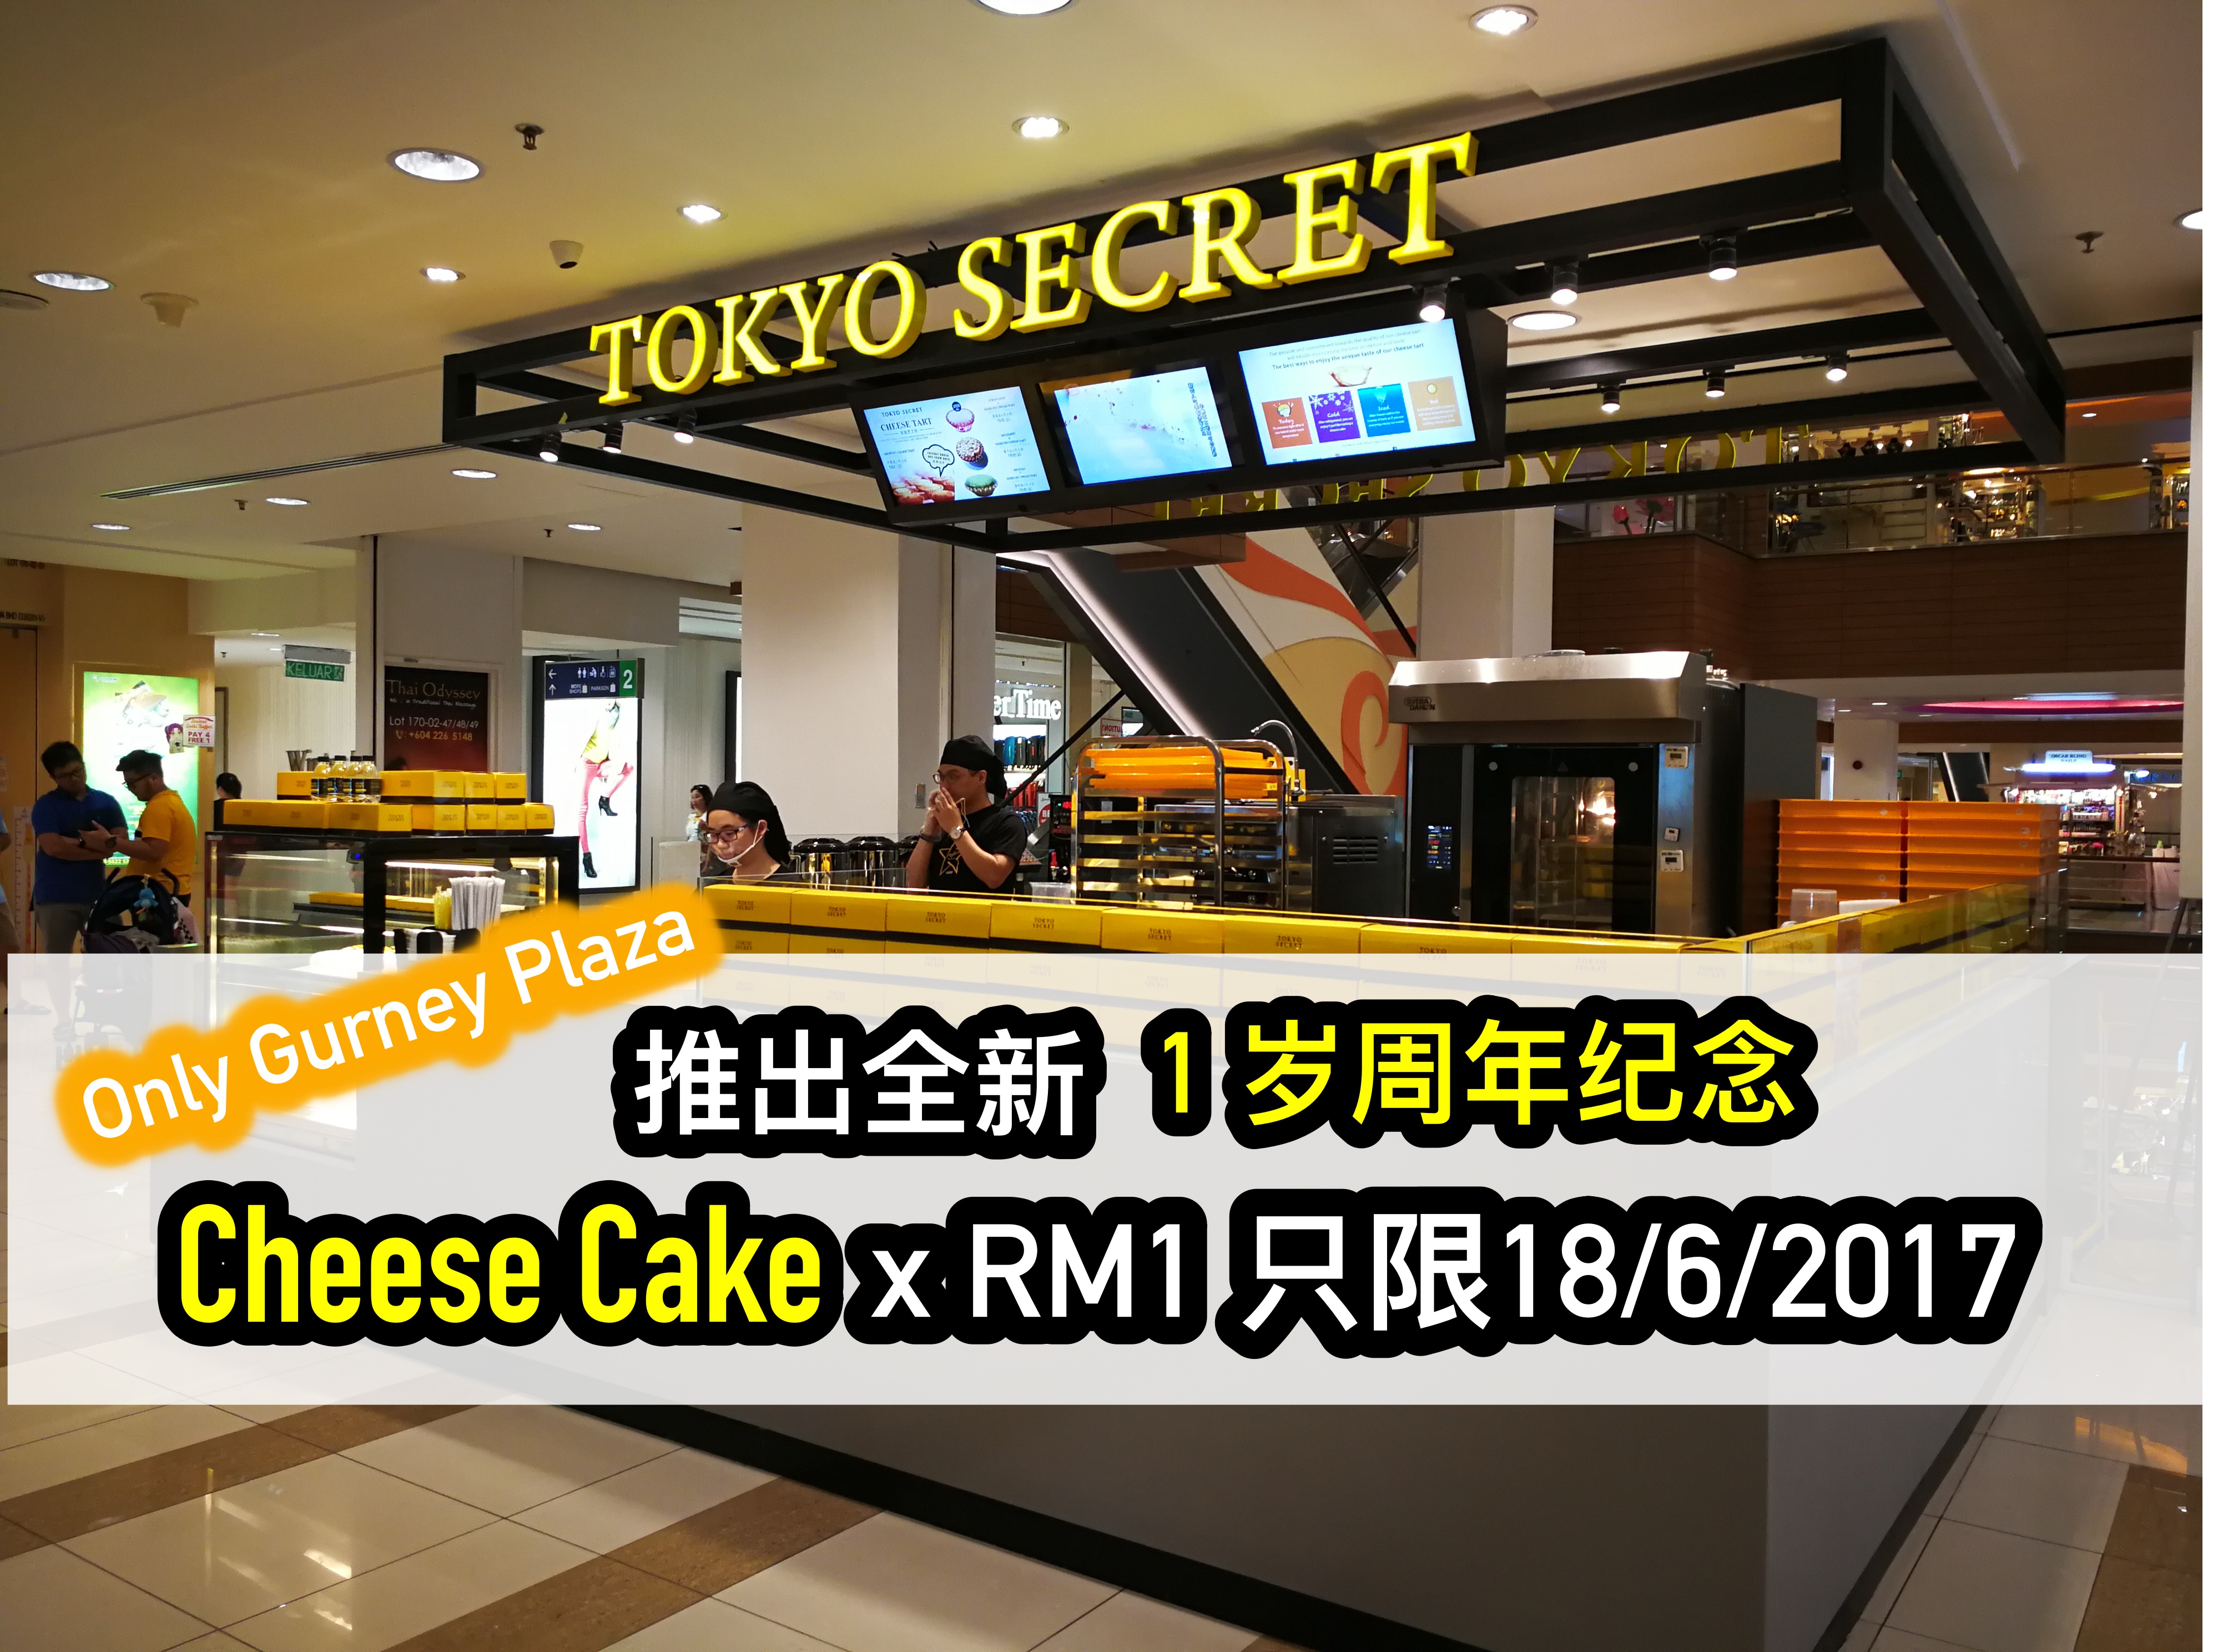 超人气的 Tokyo Secret 配合 1岁周年纪念！将于槟城Gurney Plaza 推出全新 Cheese Cake x RM1 – 只限18/6/2017 当天！